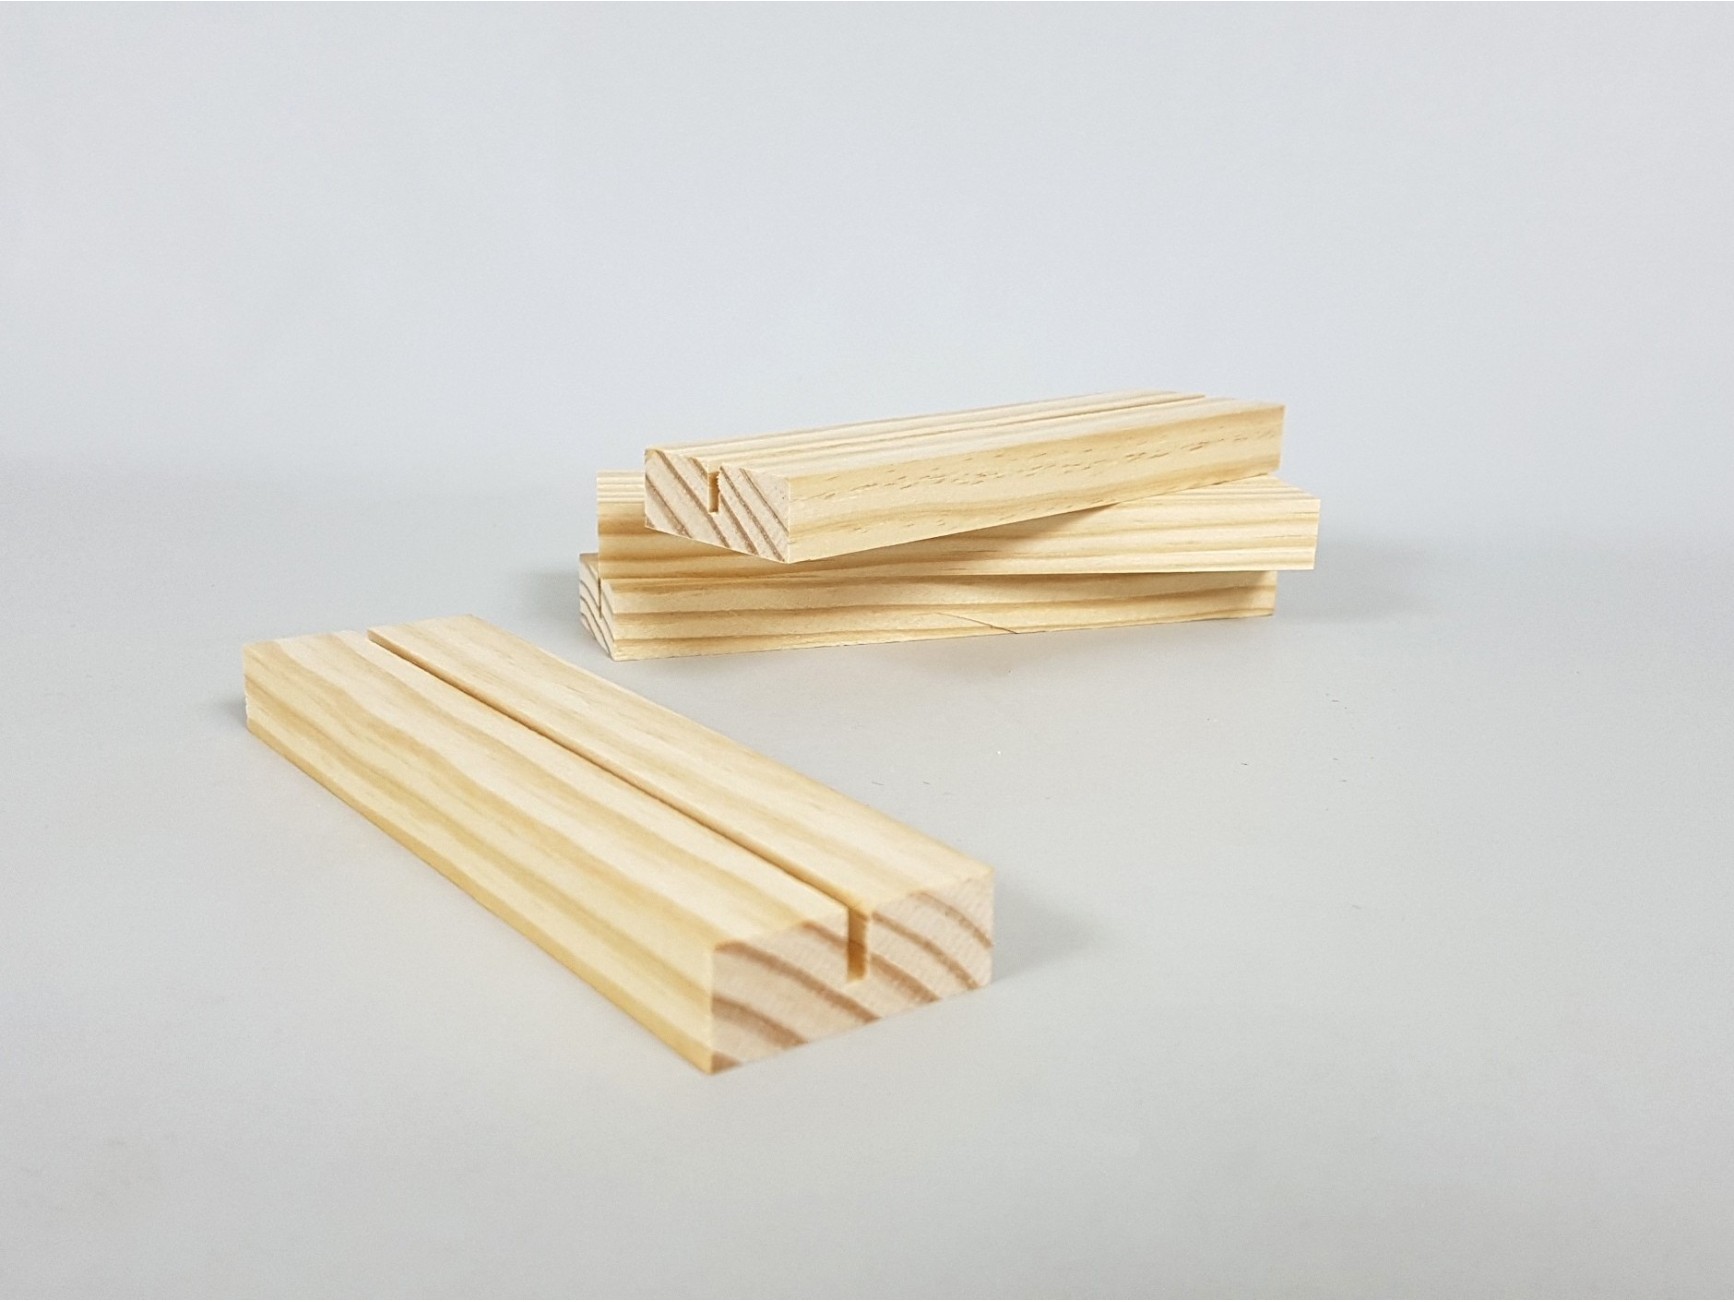  Paquete de 10 tacos de madera de 0.394 in x 1.575 in